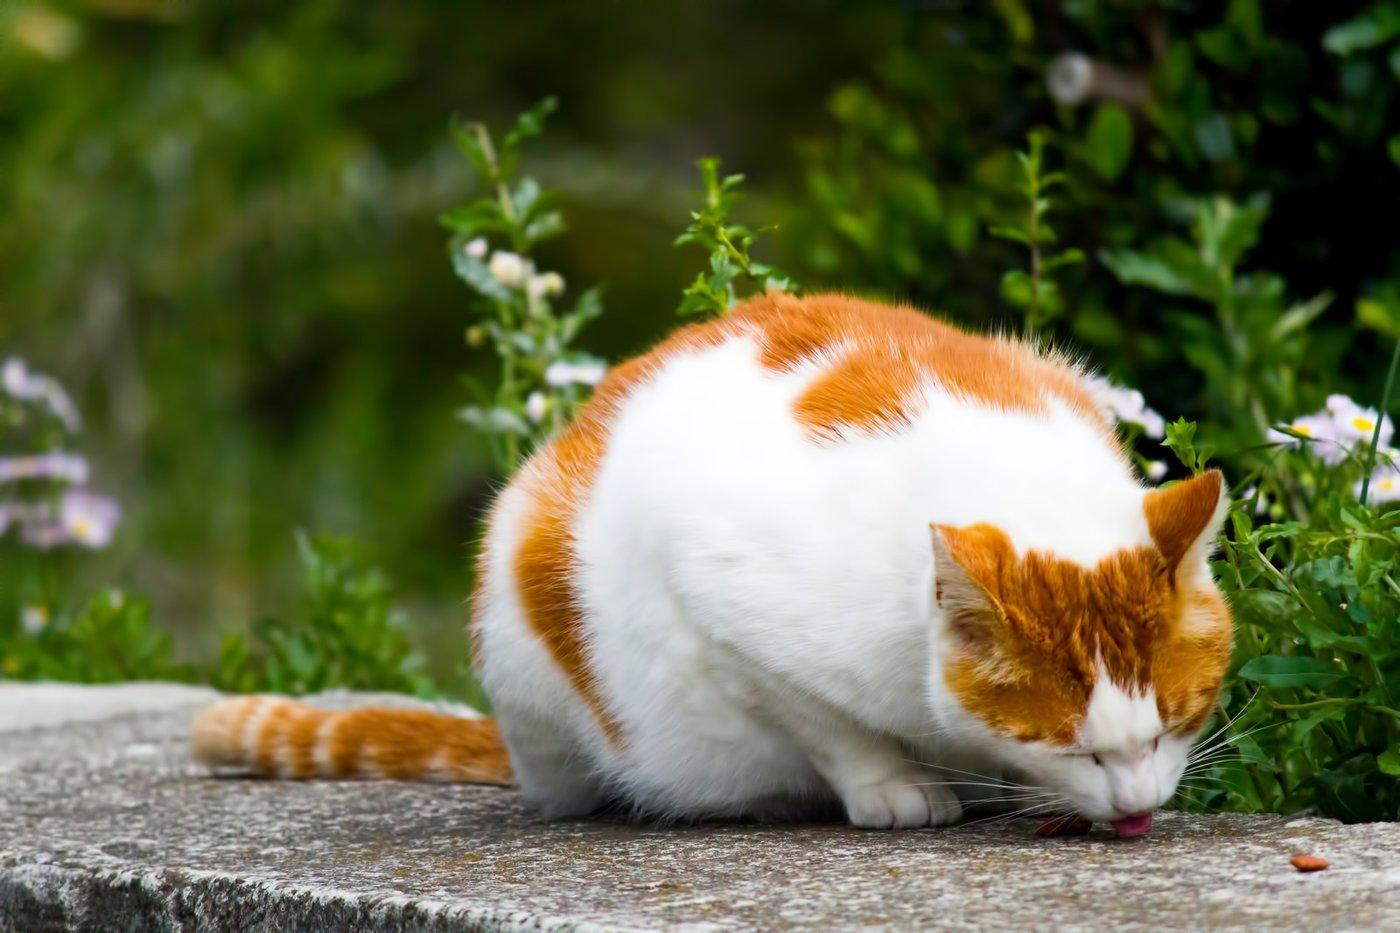 Chú mèo với bộ lông trắng xen những mảng vàng cam đang gặm nhấm những viên thức ăn ngon lành còn sót lại (Ảnh: Internet).